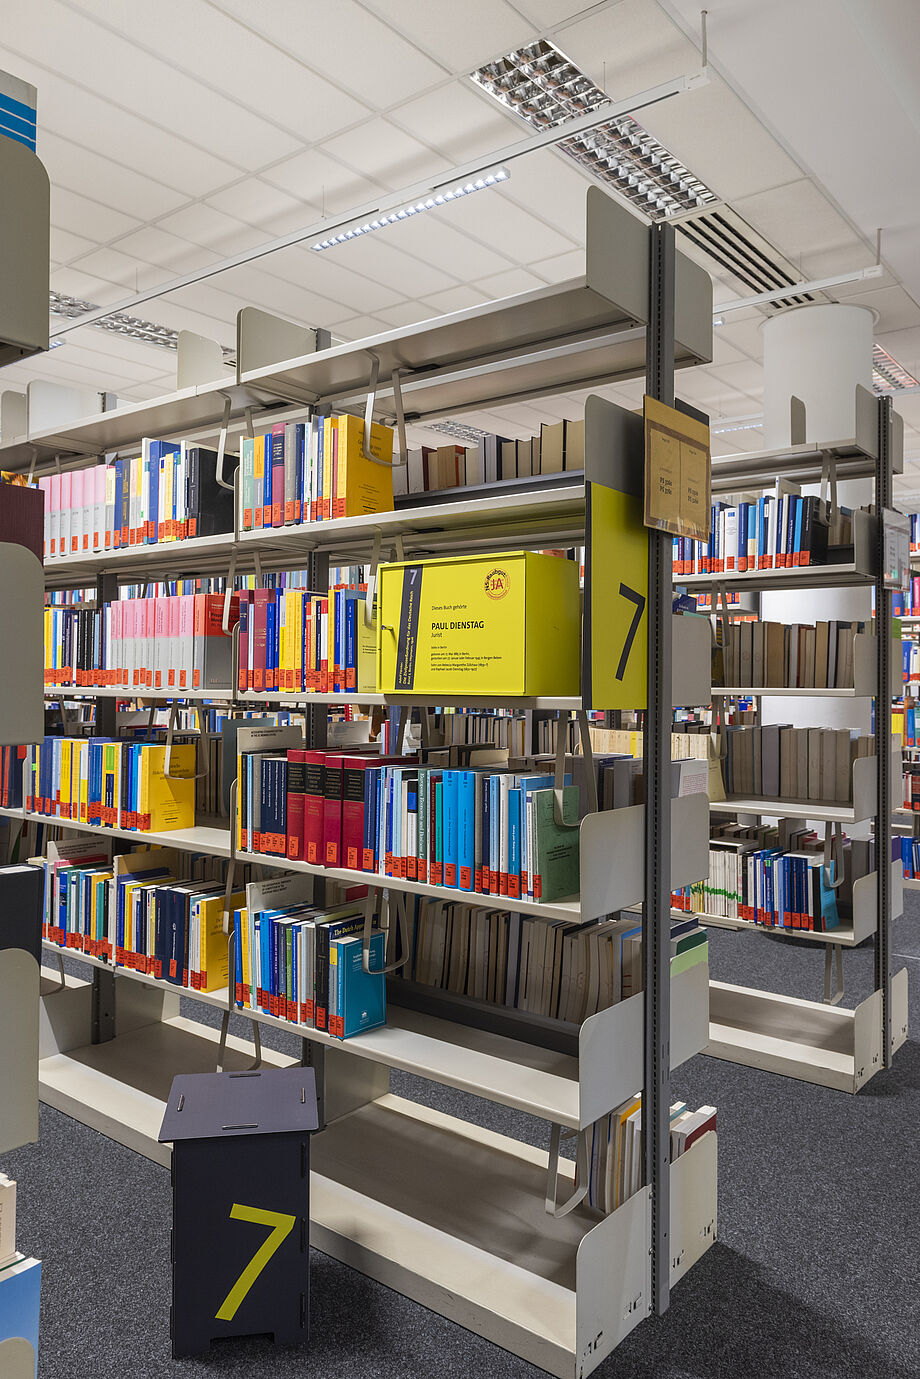 In der Bibliothek mehrere Bücherregale. In einem steht eine der Gelben Infoboxen mit Inhalten zur Ausstellung. 